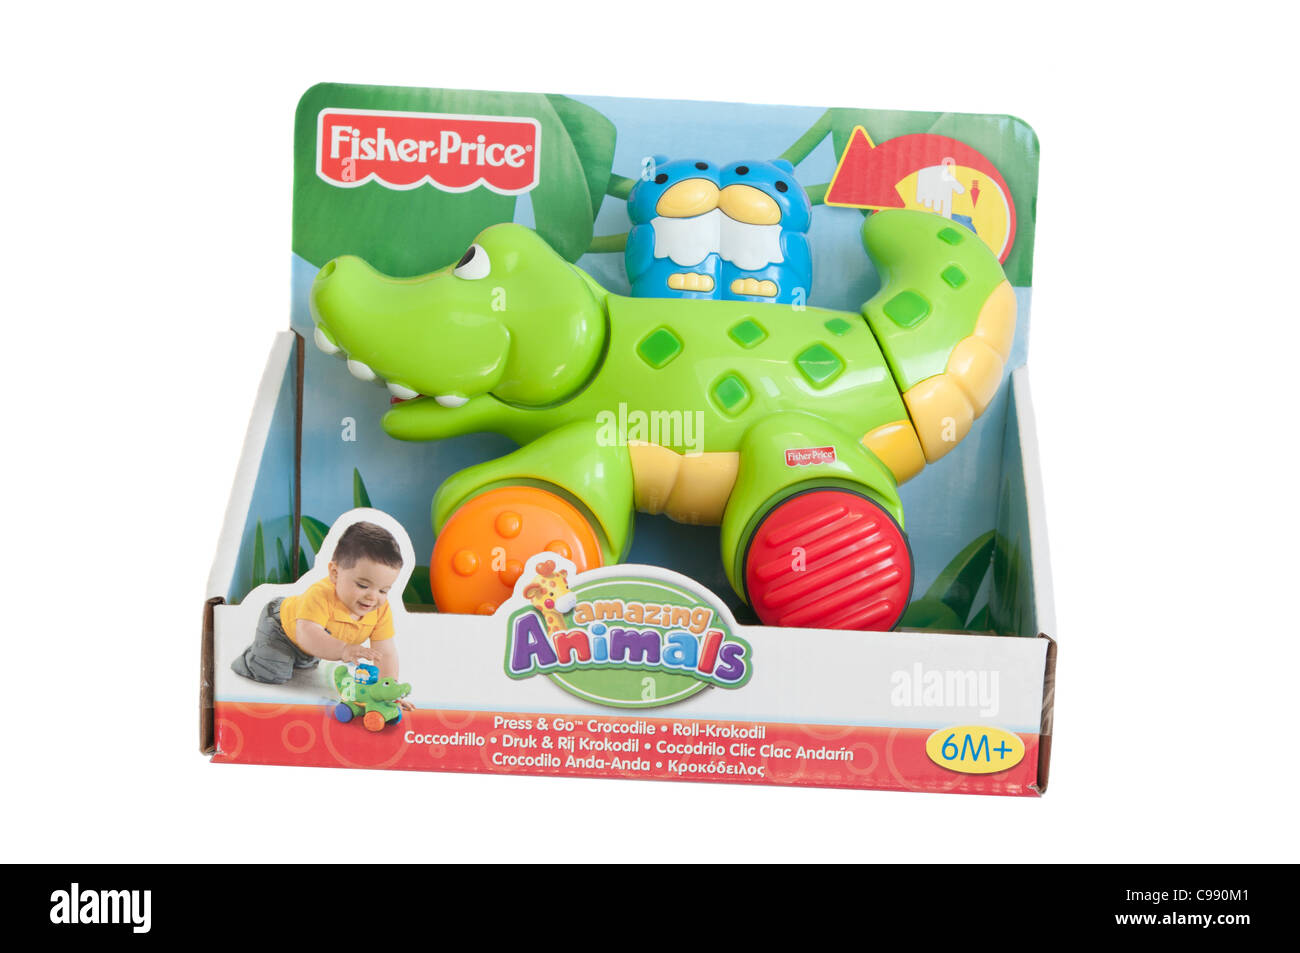 Niños Niños Fisher Price juguetes juguetes de plástico Fotografía de stock  - Alamy